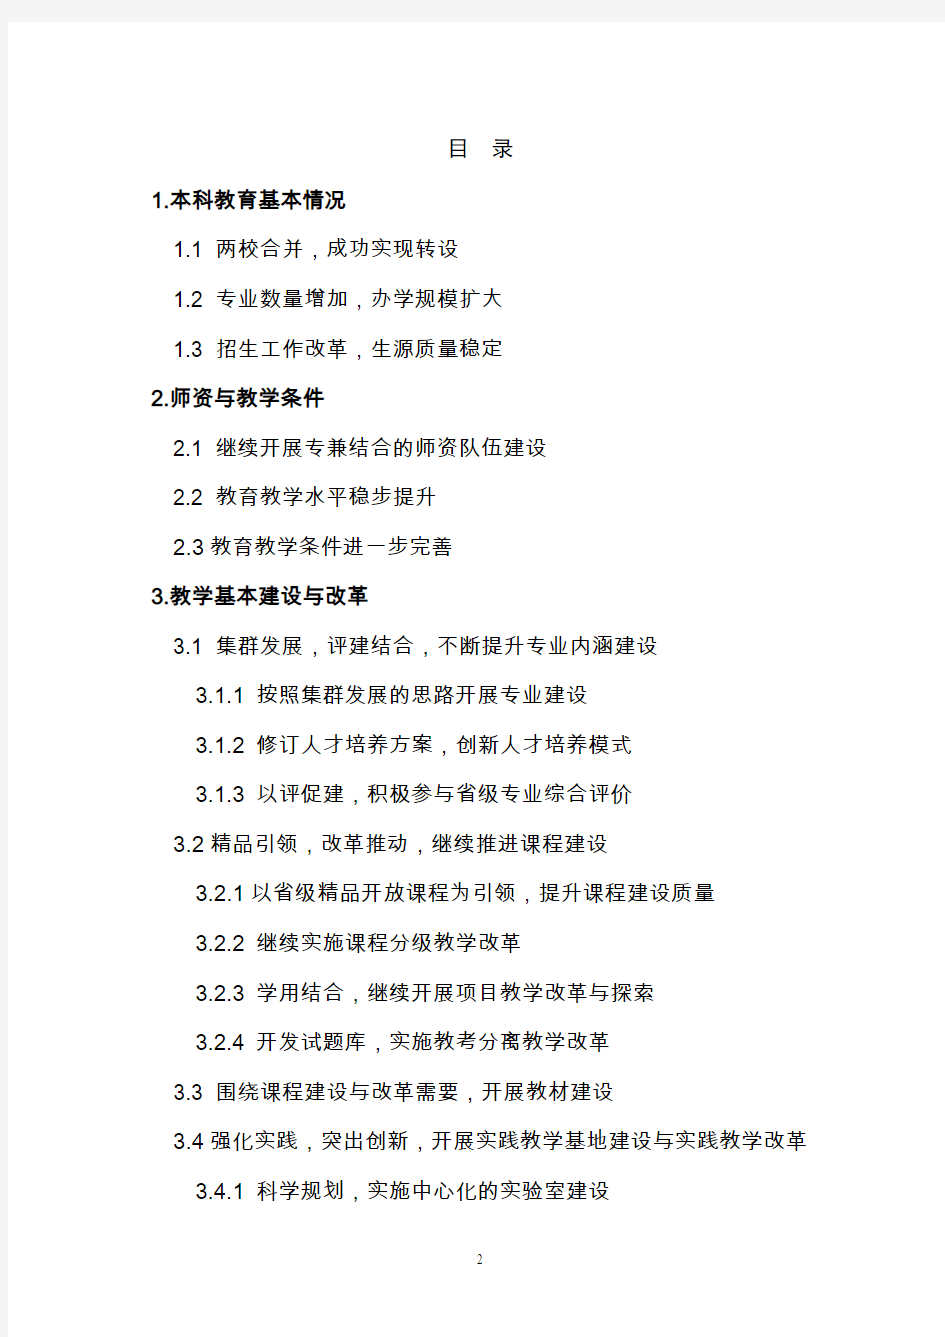 13201沈阳工学院2013年度本科教学质量报告